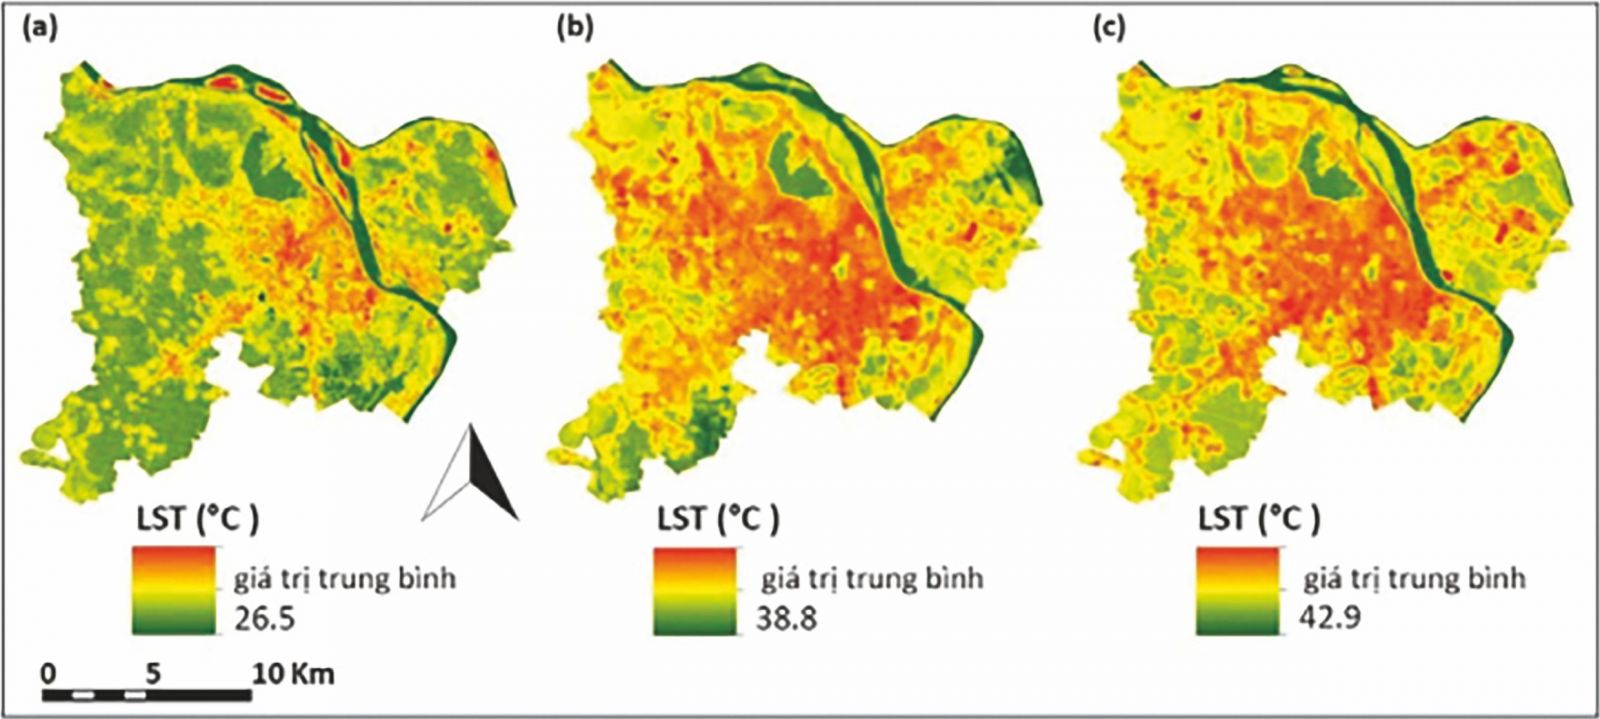 Tổng quan hiện tượng đảo nhiệt tại một số đô thị lớn của Việt Nam